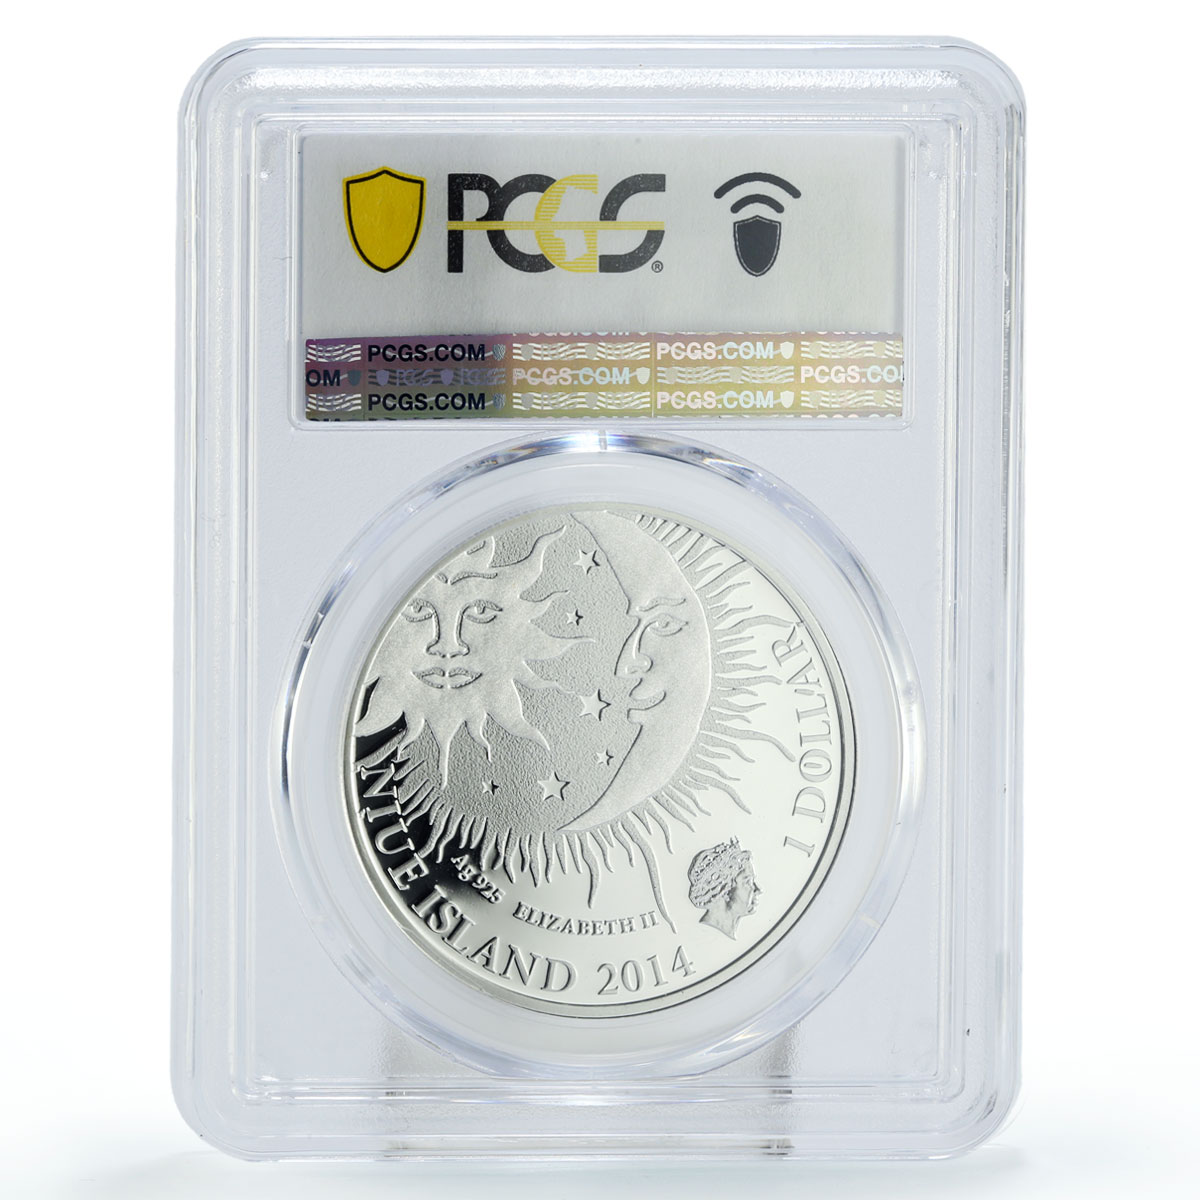 Niue 1 dollar Zodiac Signs Virgo PR70 PCGS colored silver coin 2014